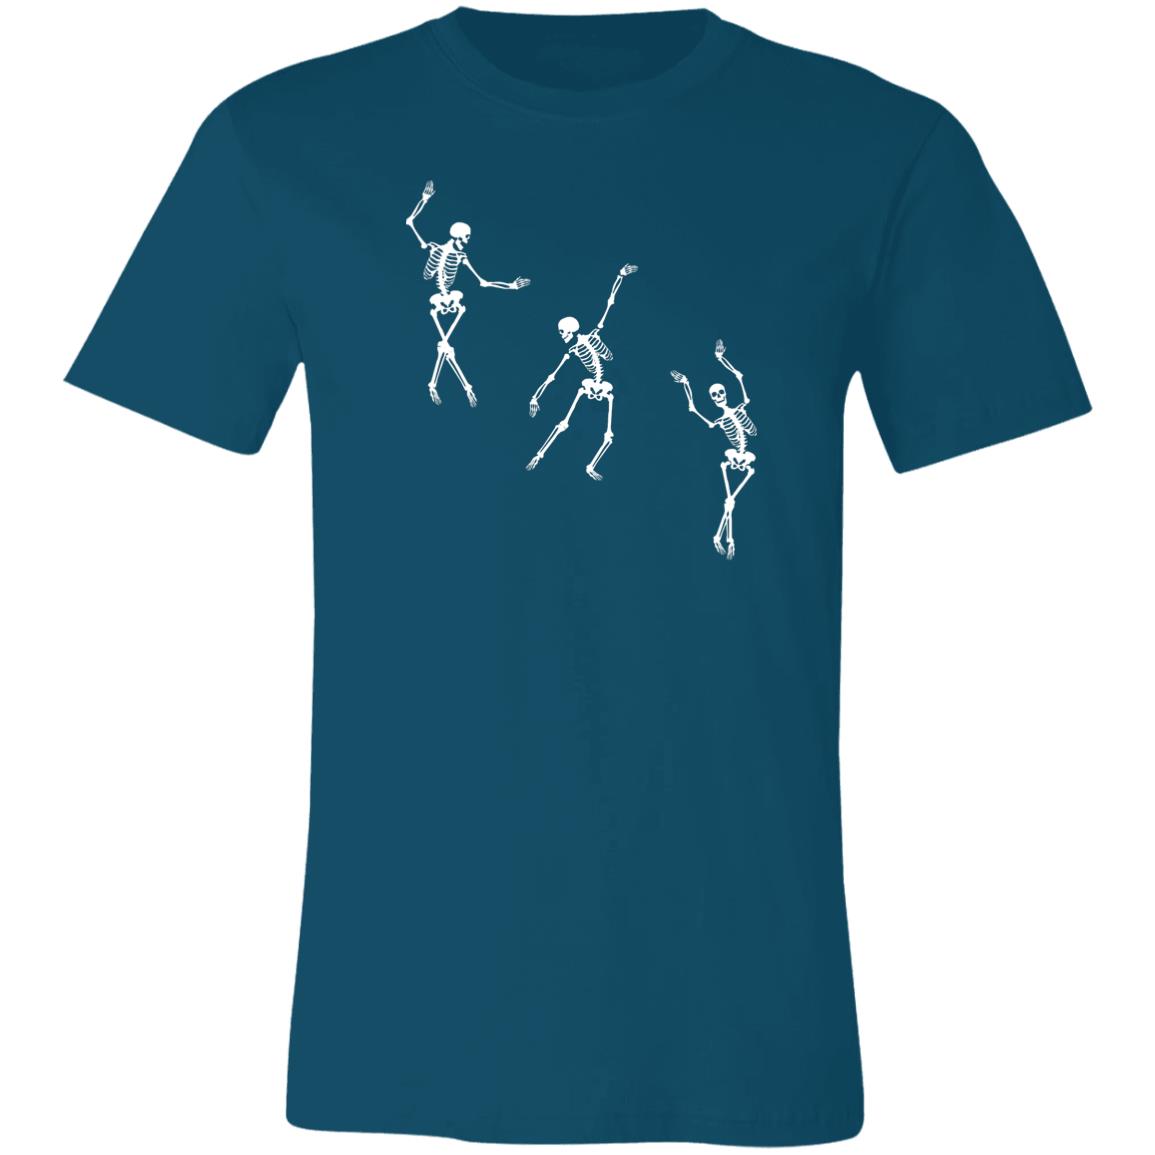 Dancing Skeletons T-Shirt